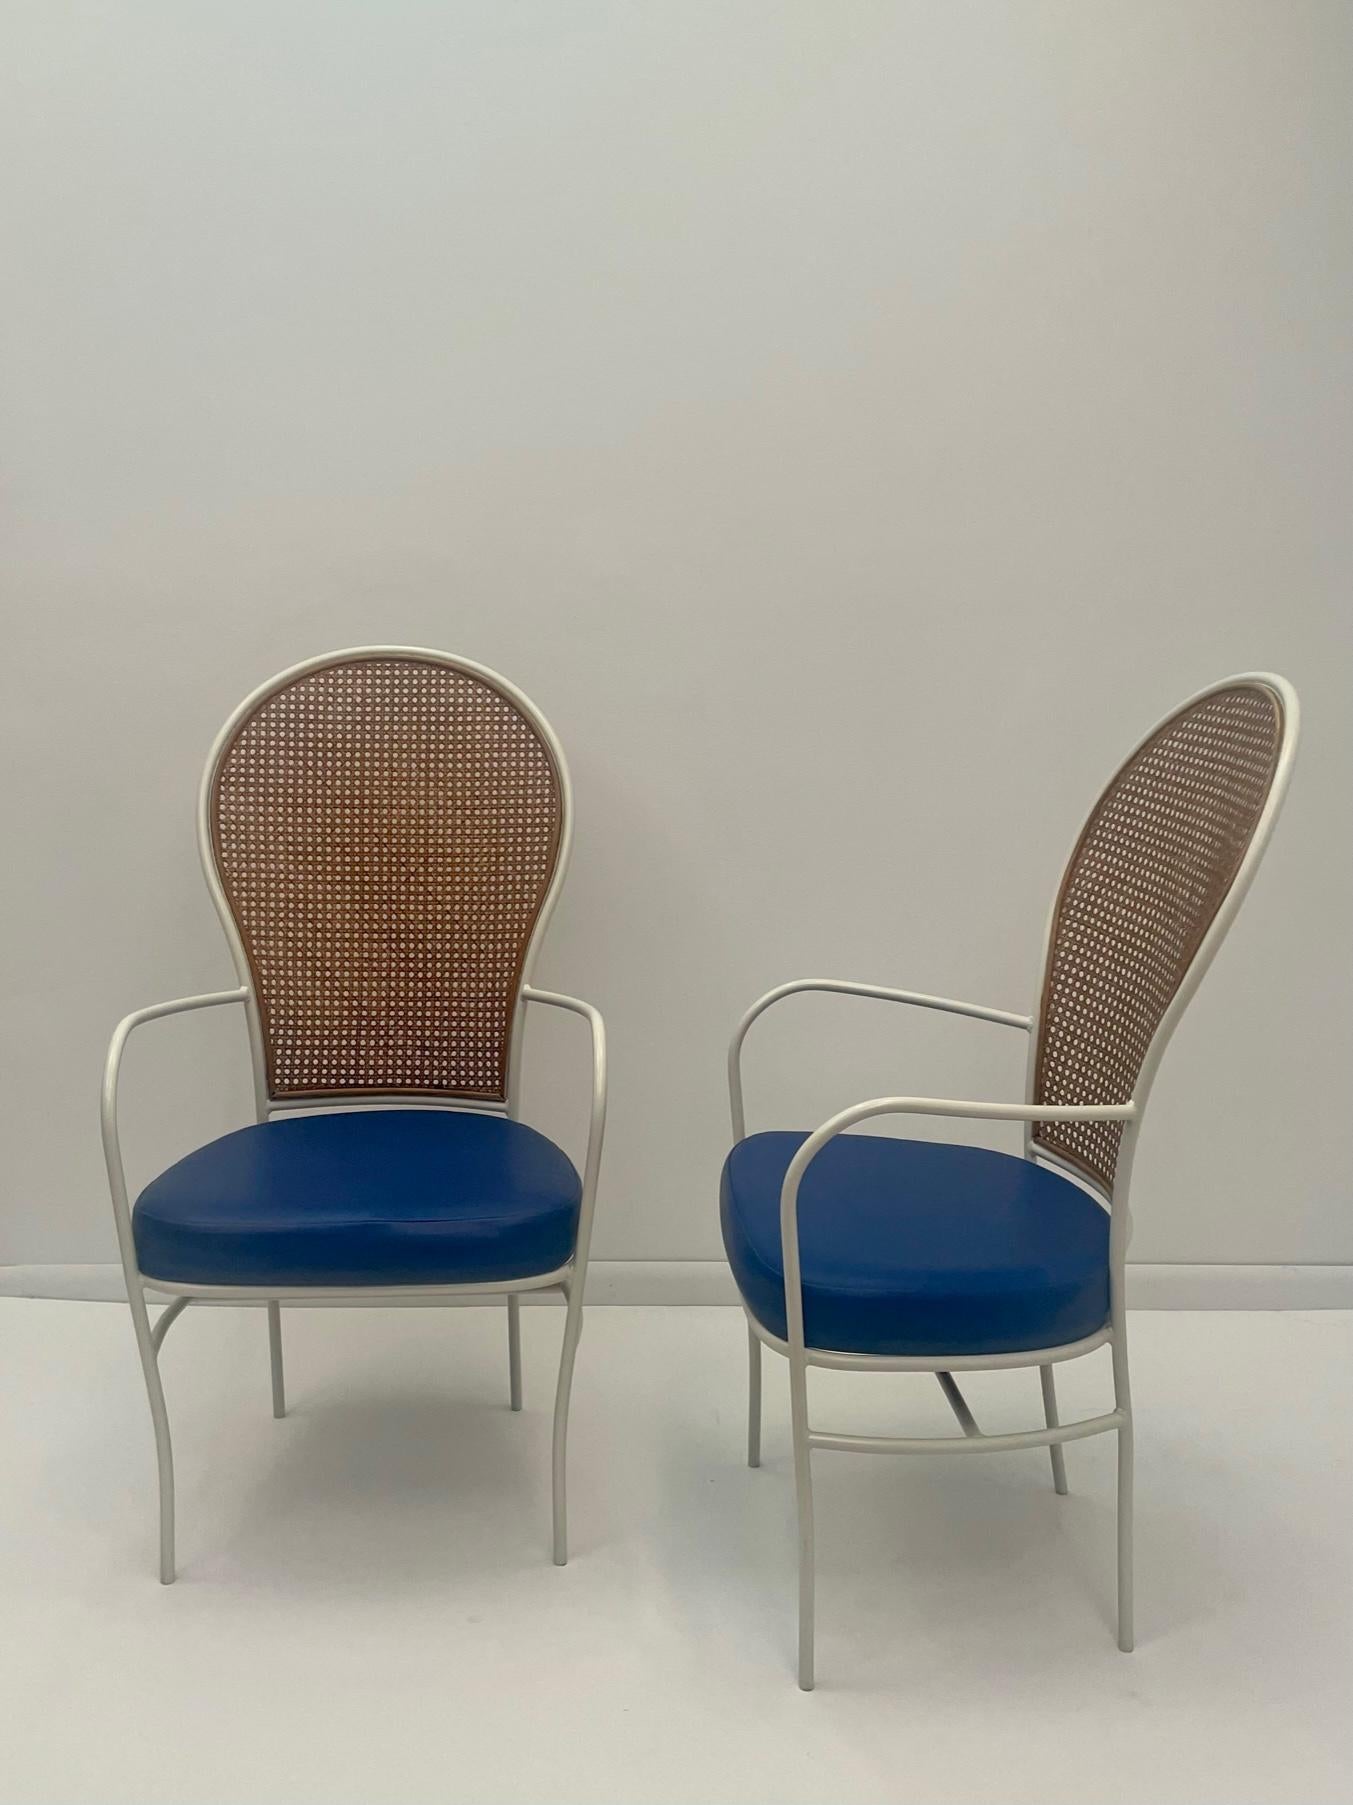 Cooles Mid-Century Modern Paar Milo Baughman Sessel mit weiß gestrichenem Eisenrahmen, hübscher Rückenlehne und original blauen Vinylsitzen. Die Arme sind dünn und elegant, ebenso wie die Beine. 
Armhöhe 26.